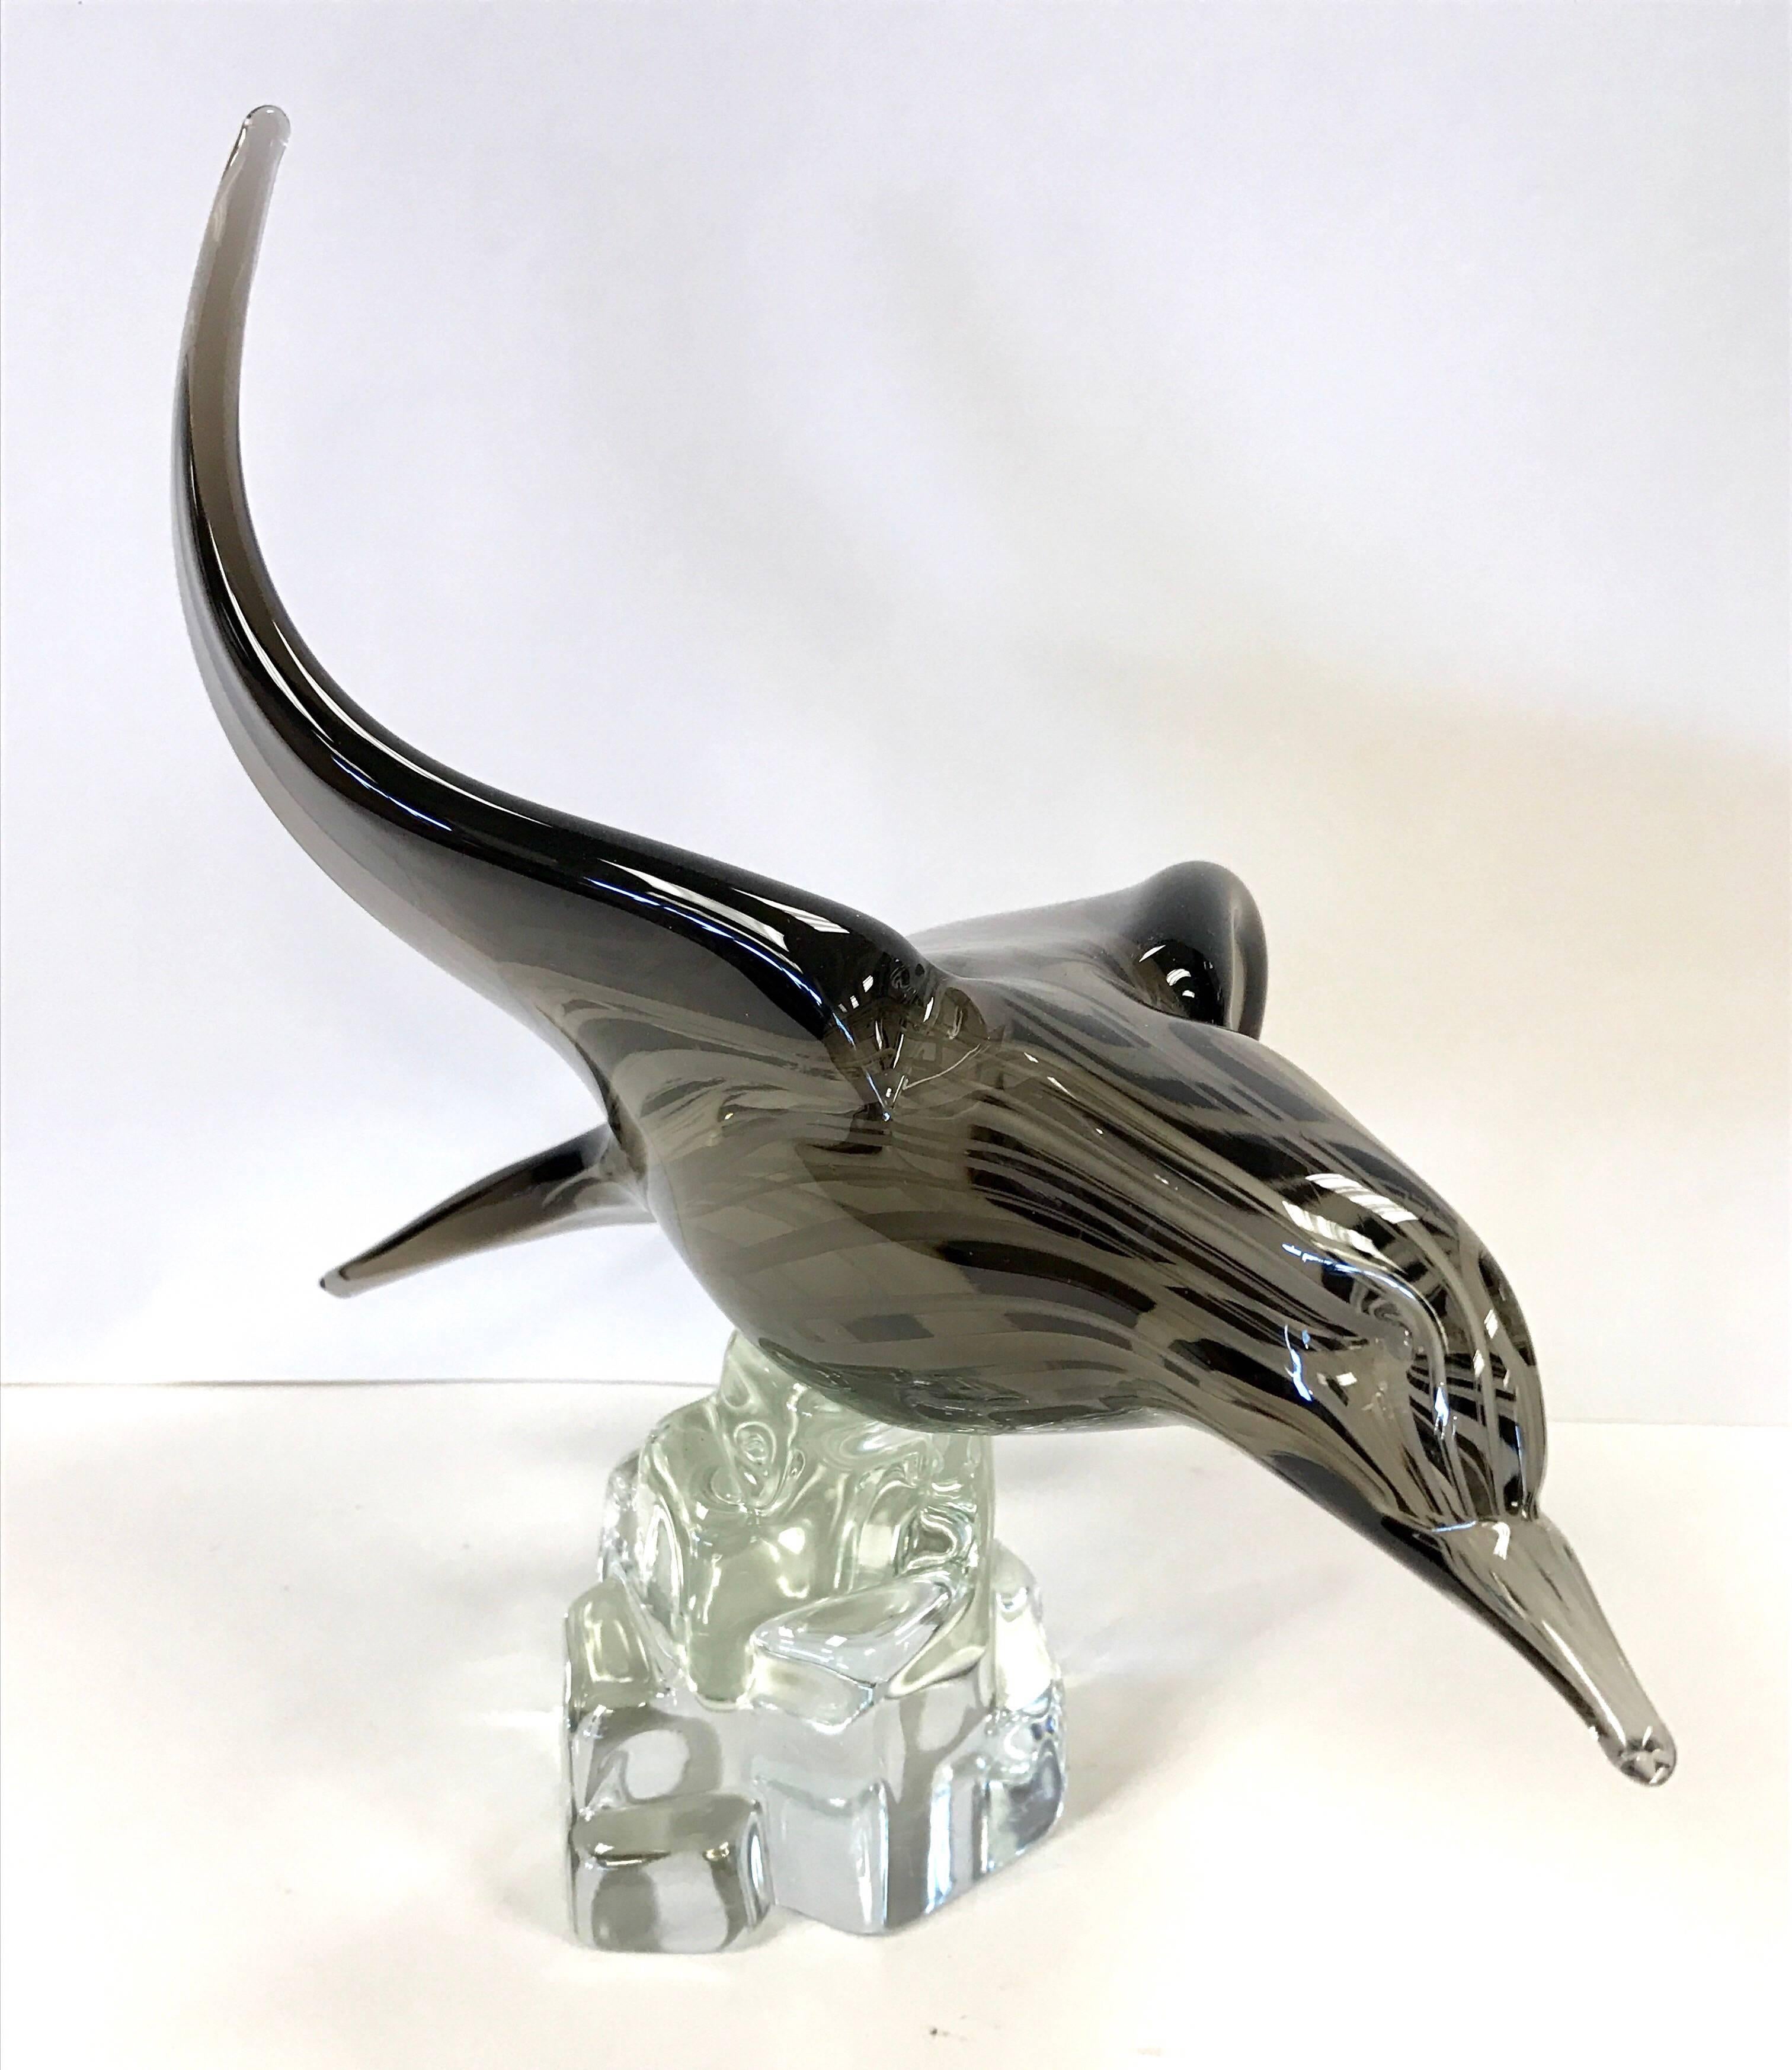 Italian Licio Zanetti Signed Murano Blown Glass Bird Sculpture Art Figure